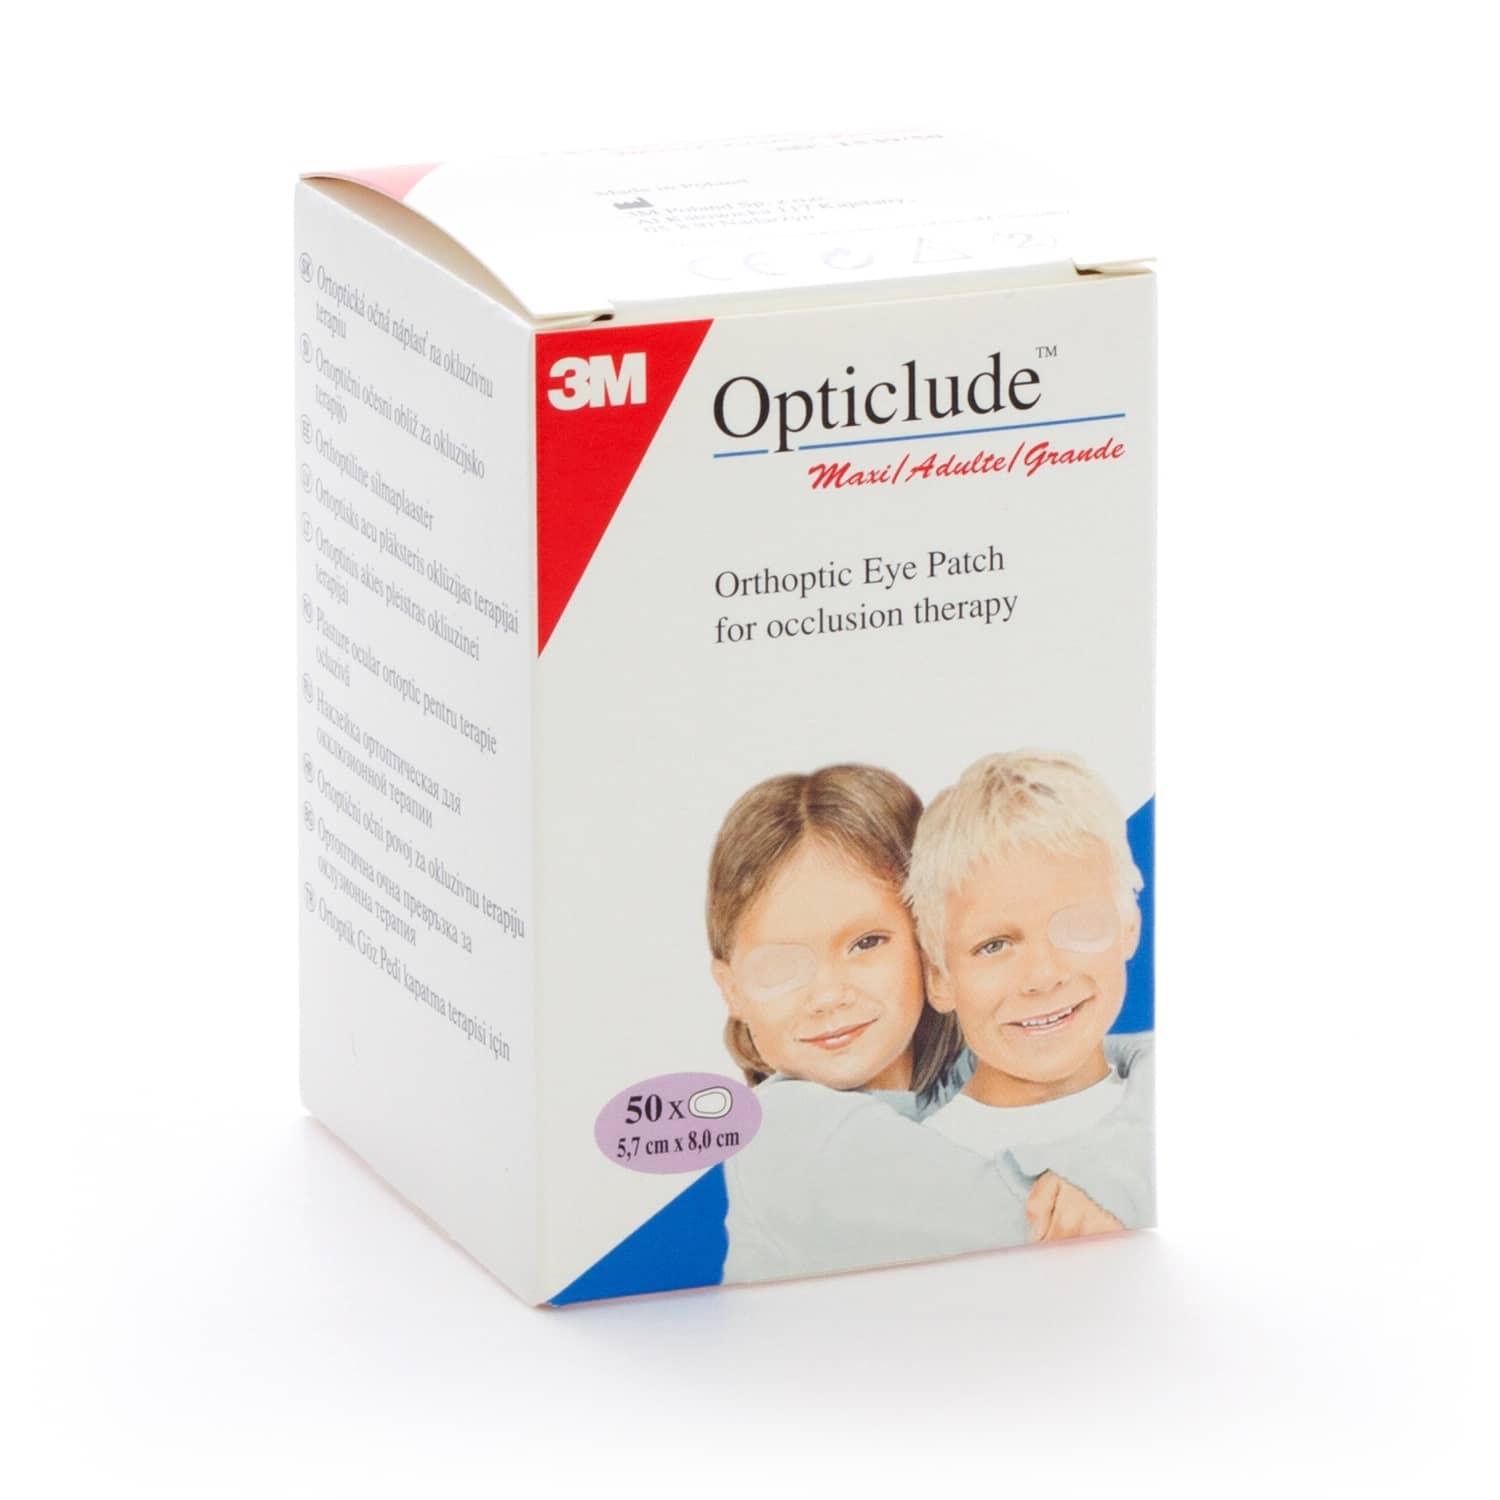 Opticlude Eye Patch